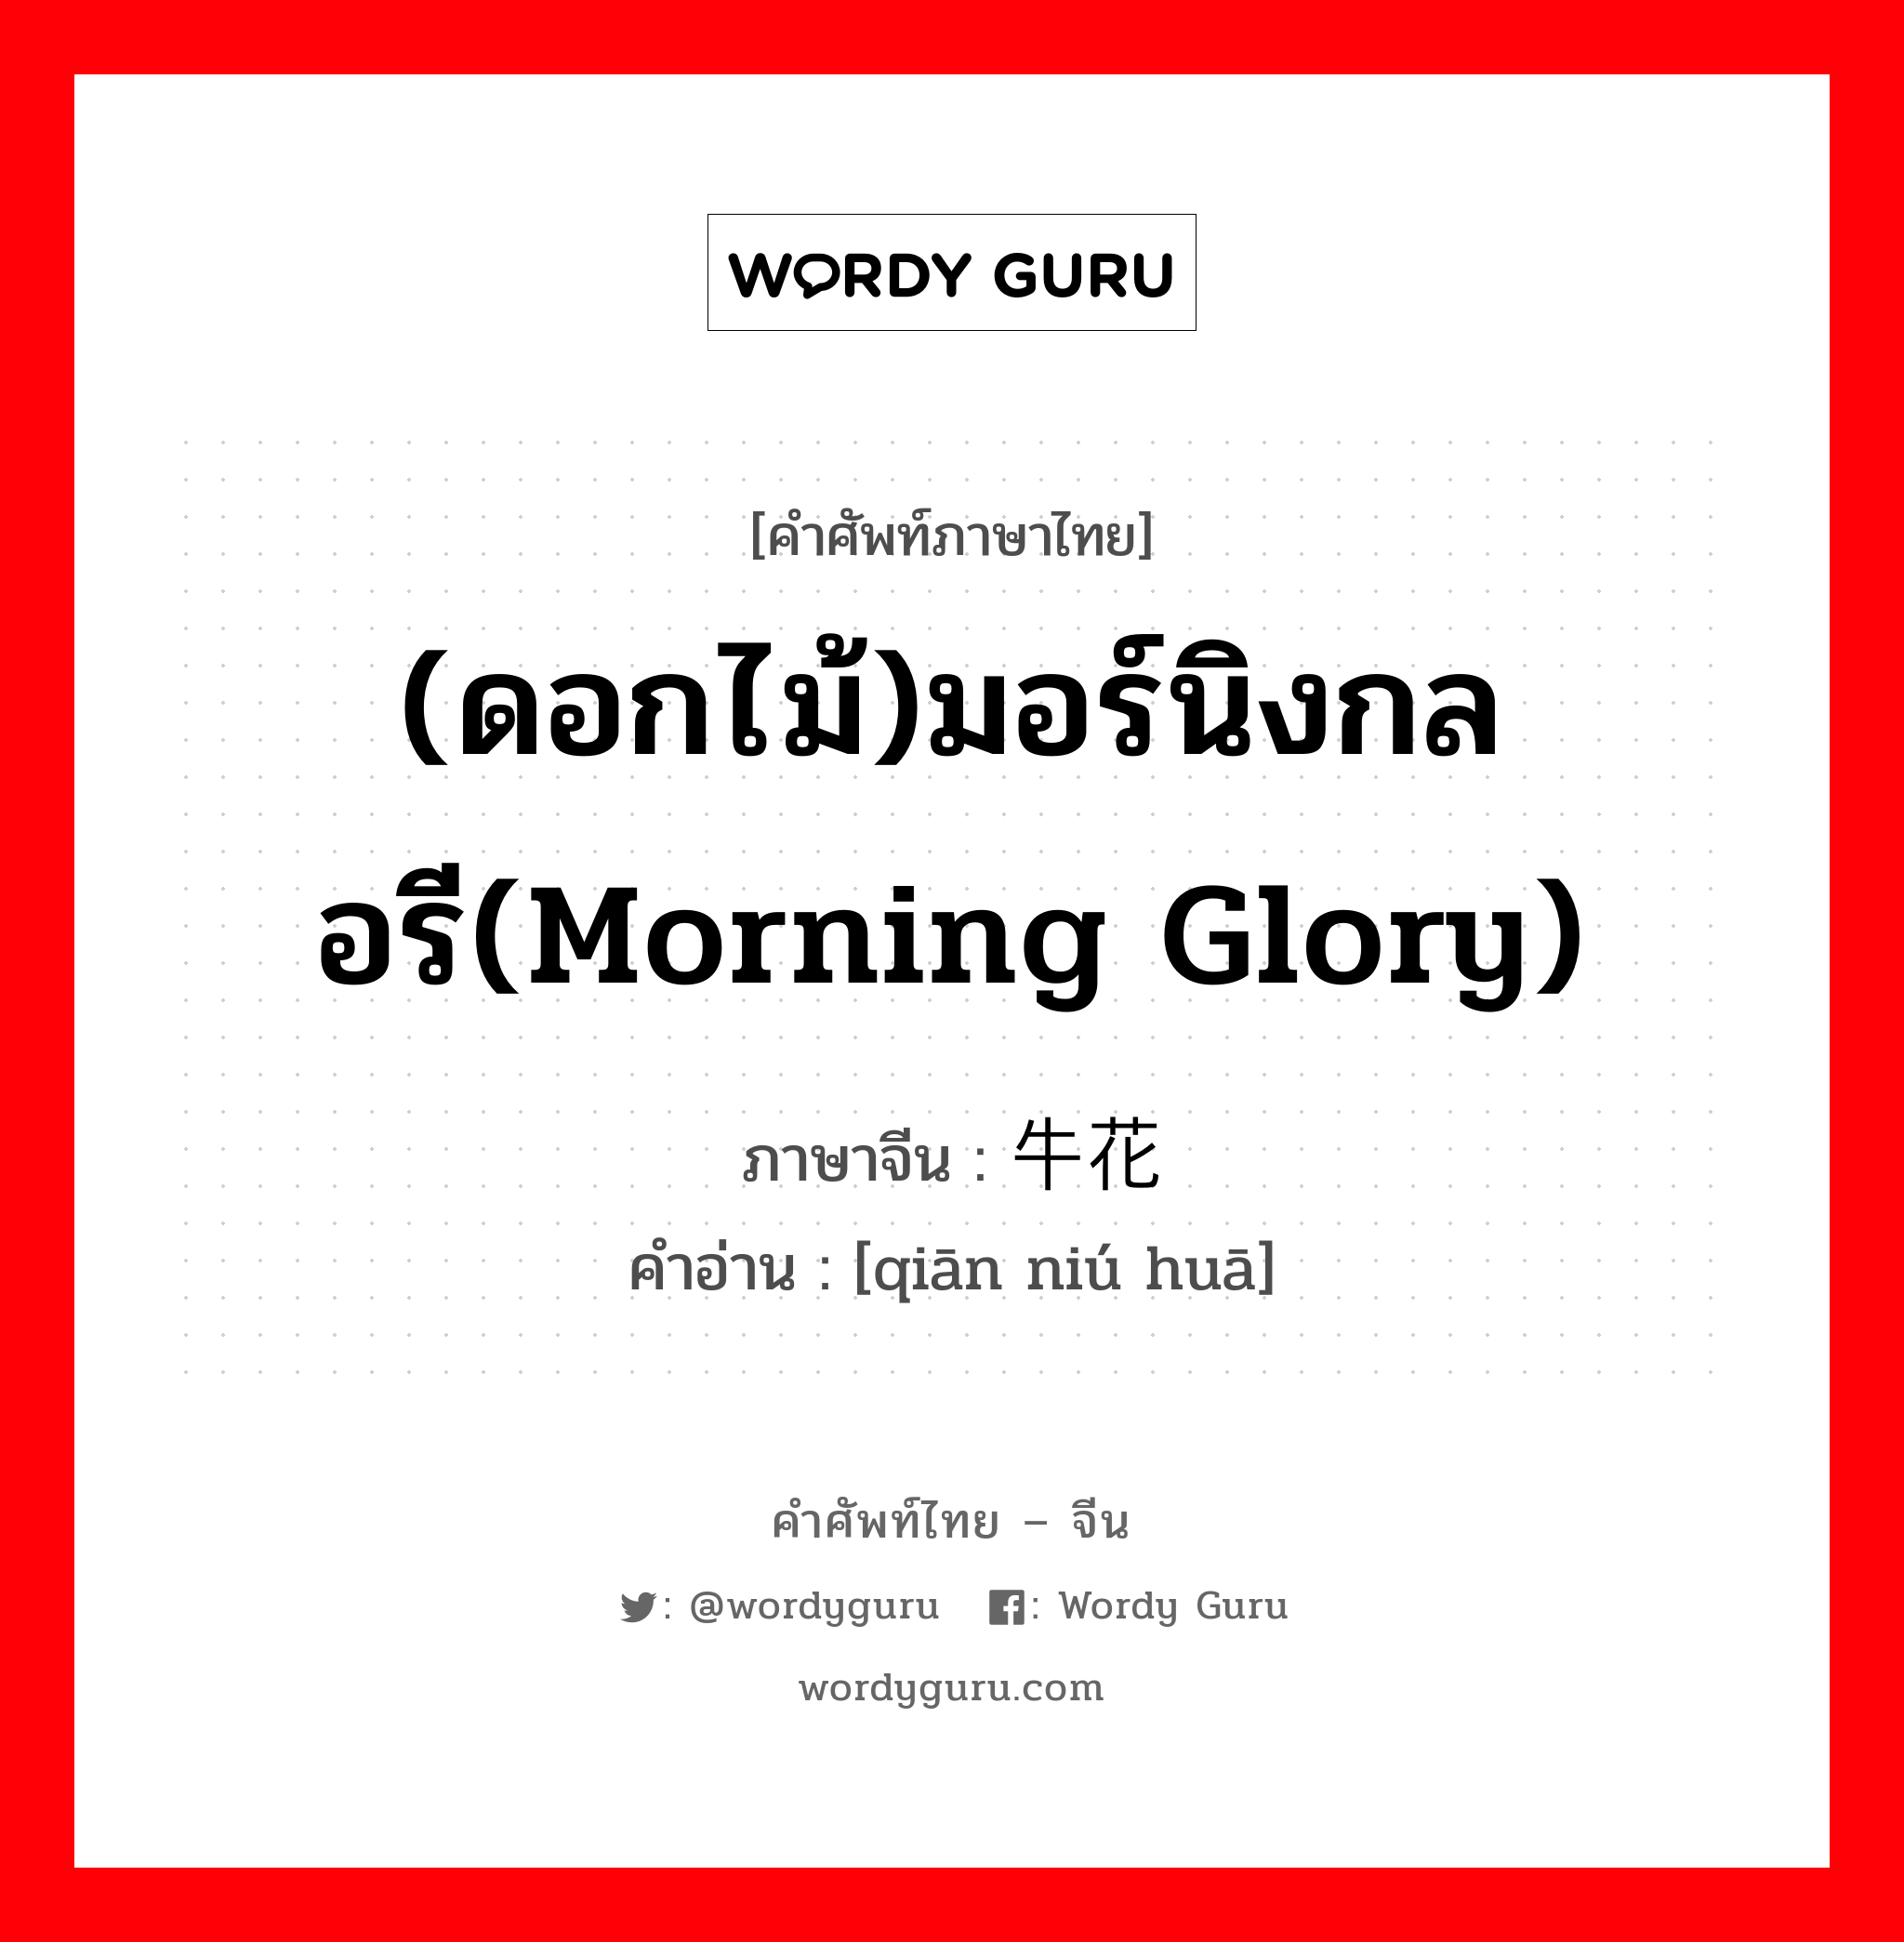 (ดอกไม้)มอร์นิงกลอรี(morning glory) ภาษาจีนคืออะไร, คำศัพท์ภาษาไทย - จีน (ดอกไม้)มอร์นิงกลอรี(morning glory) ภาษาจีน 牵牛花 คำอ่าน [qiān niú huā]